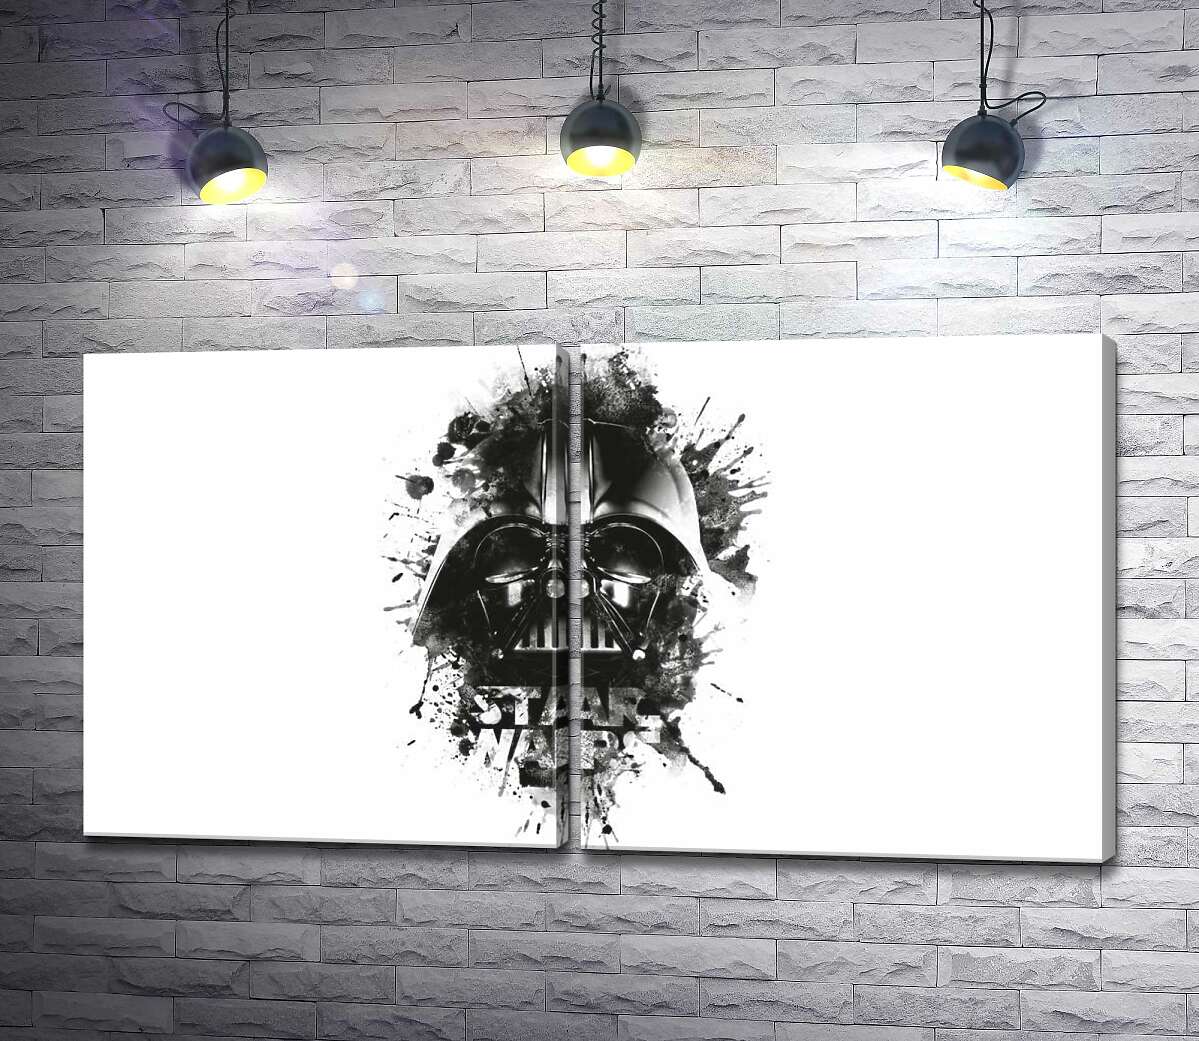 модульна картина Дарт Вейдер (Darth Vader) на постері до фільму "Зоряні війни" (Star Wars)